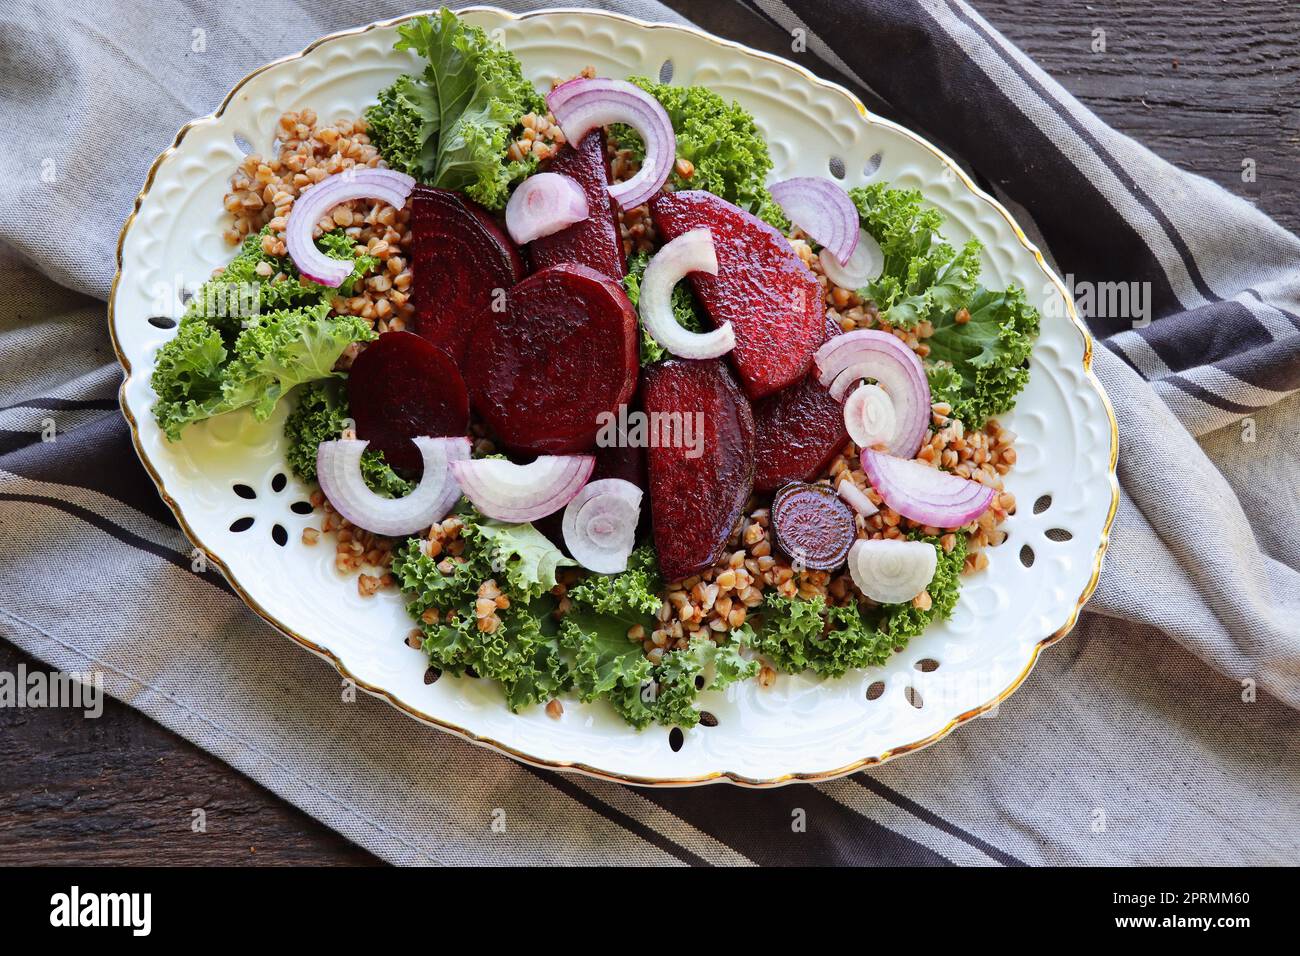 Warmer Buchweizen- und Rote-Bete-Salat auf Holzhintergrund. Vegetarische Diätidee und Rezept - Salat mit Rote Bete, Buchweizen, Grünkohl, Zwiebeln, frischen Kräutern. Draufsicht oder flach liegend Stockfoto